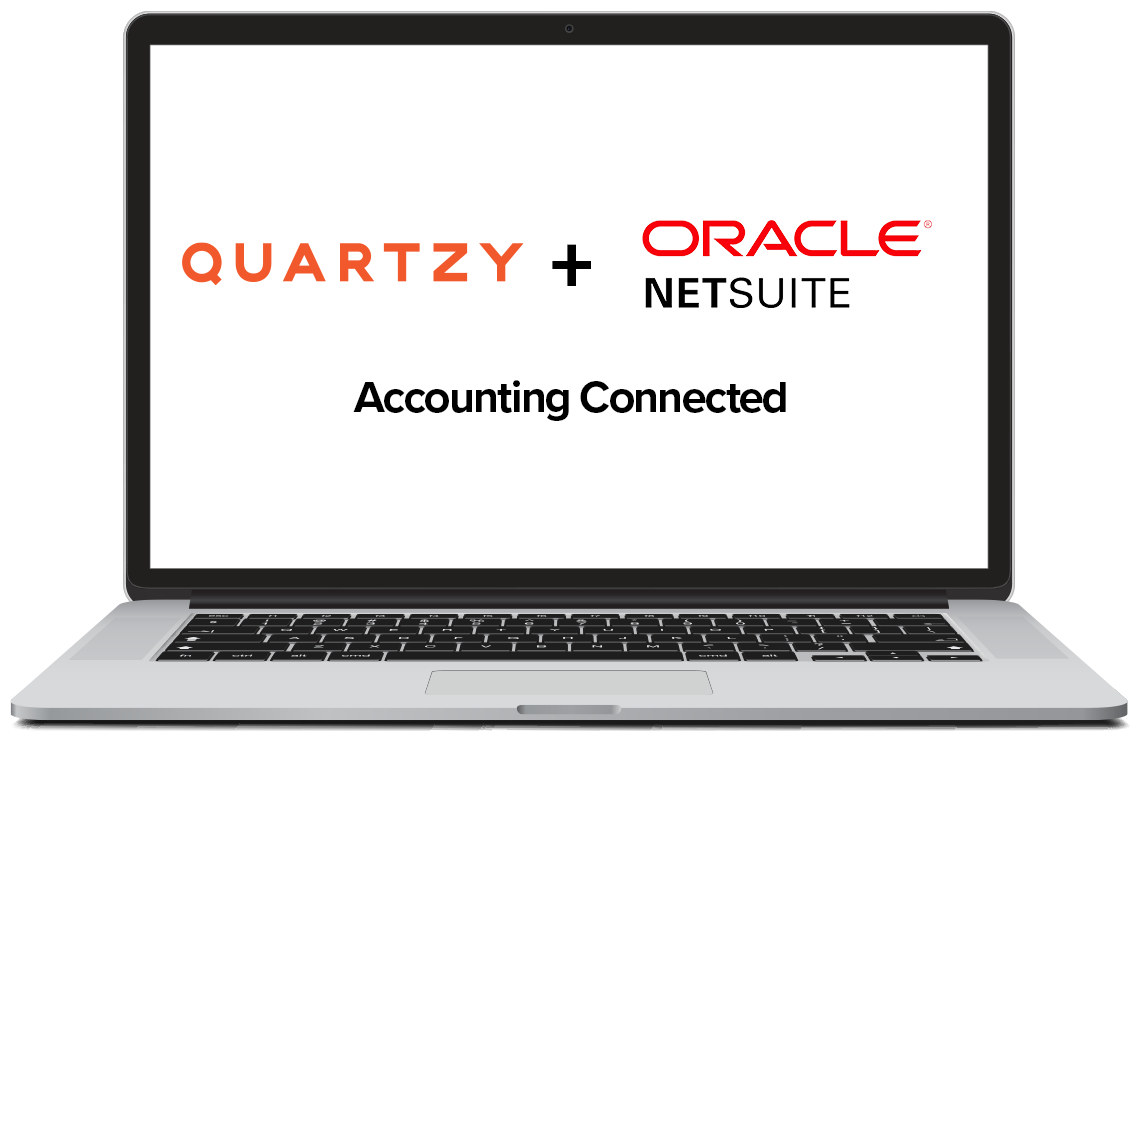 quartzy_oracle_netsuite_laptop